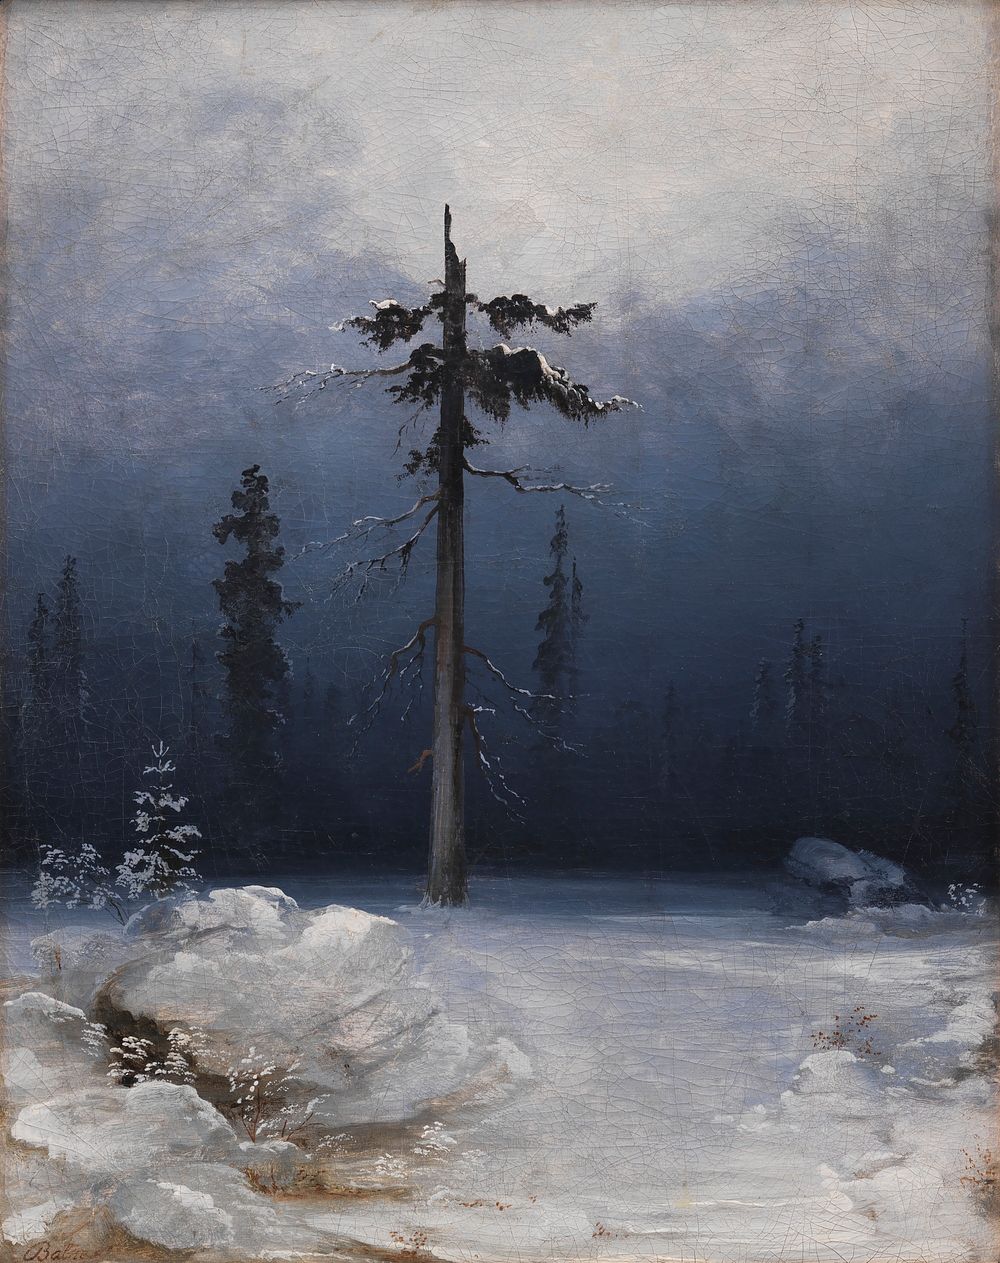 Tree in winter forest by Peder Balke